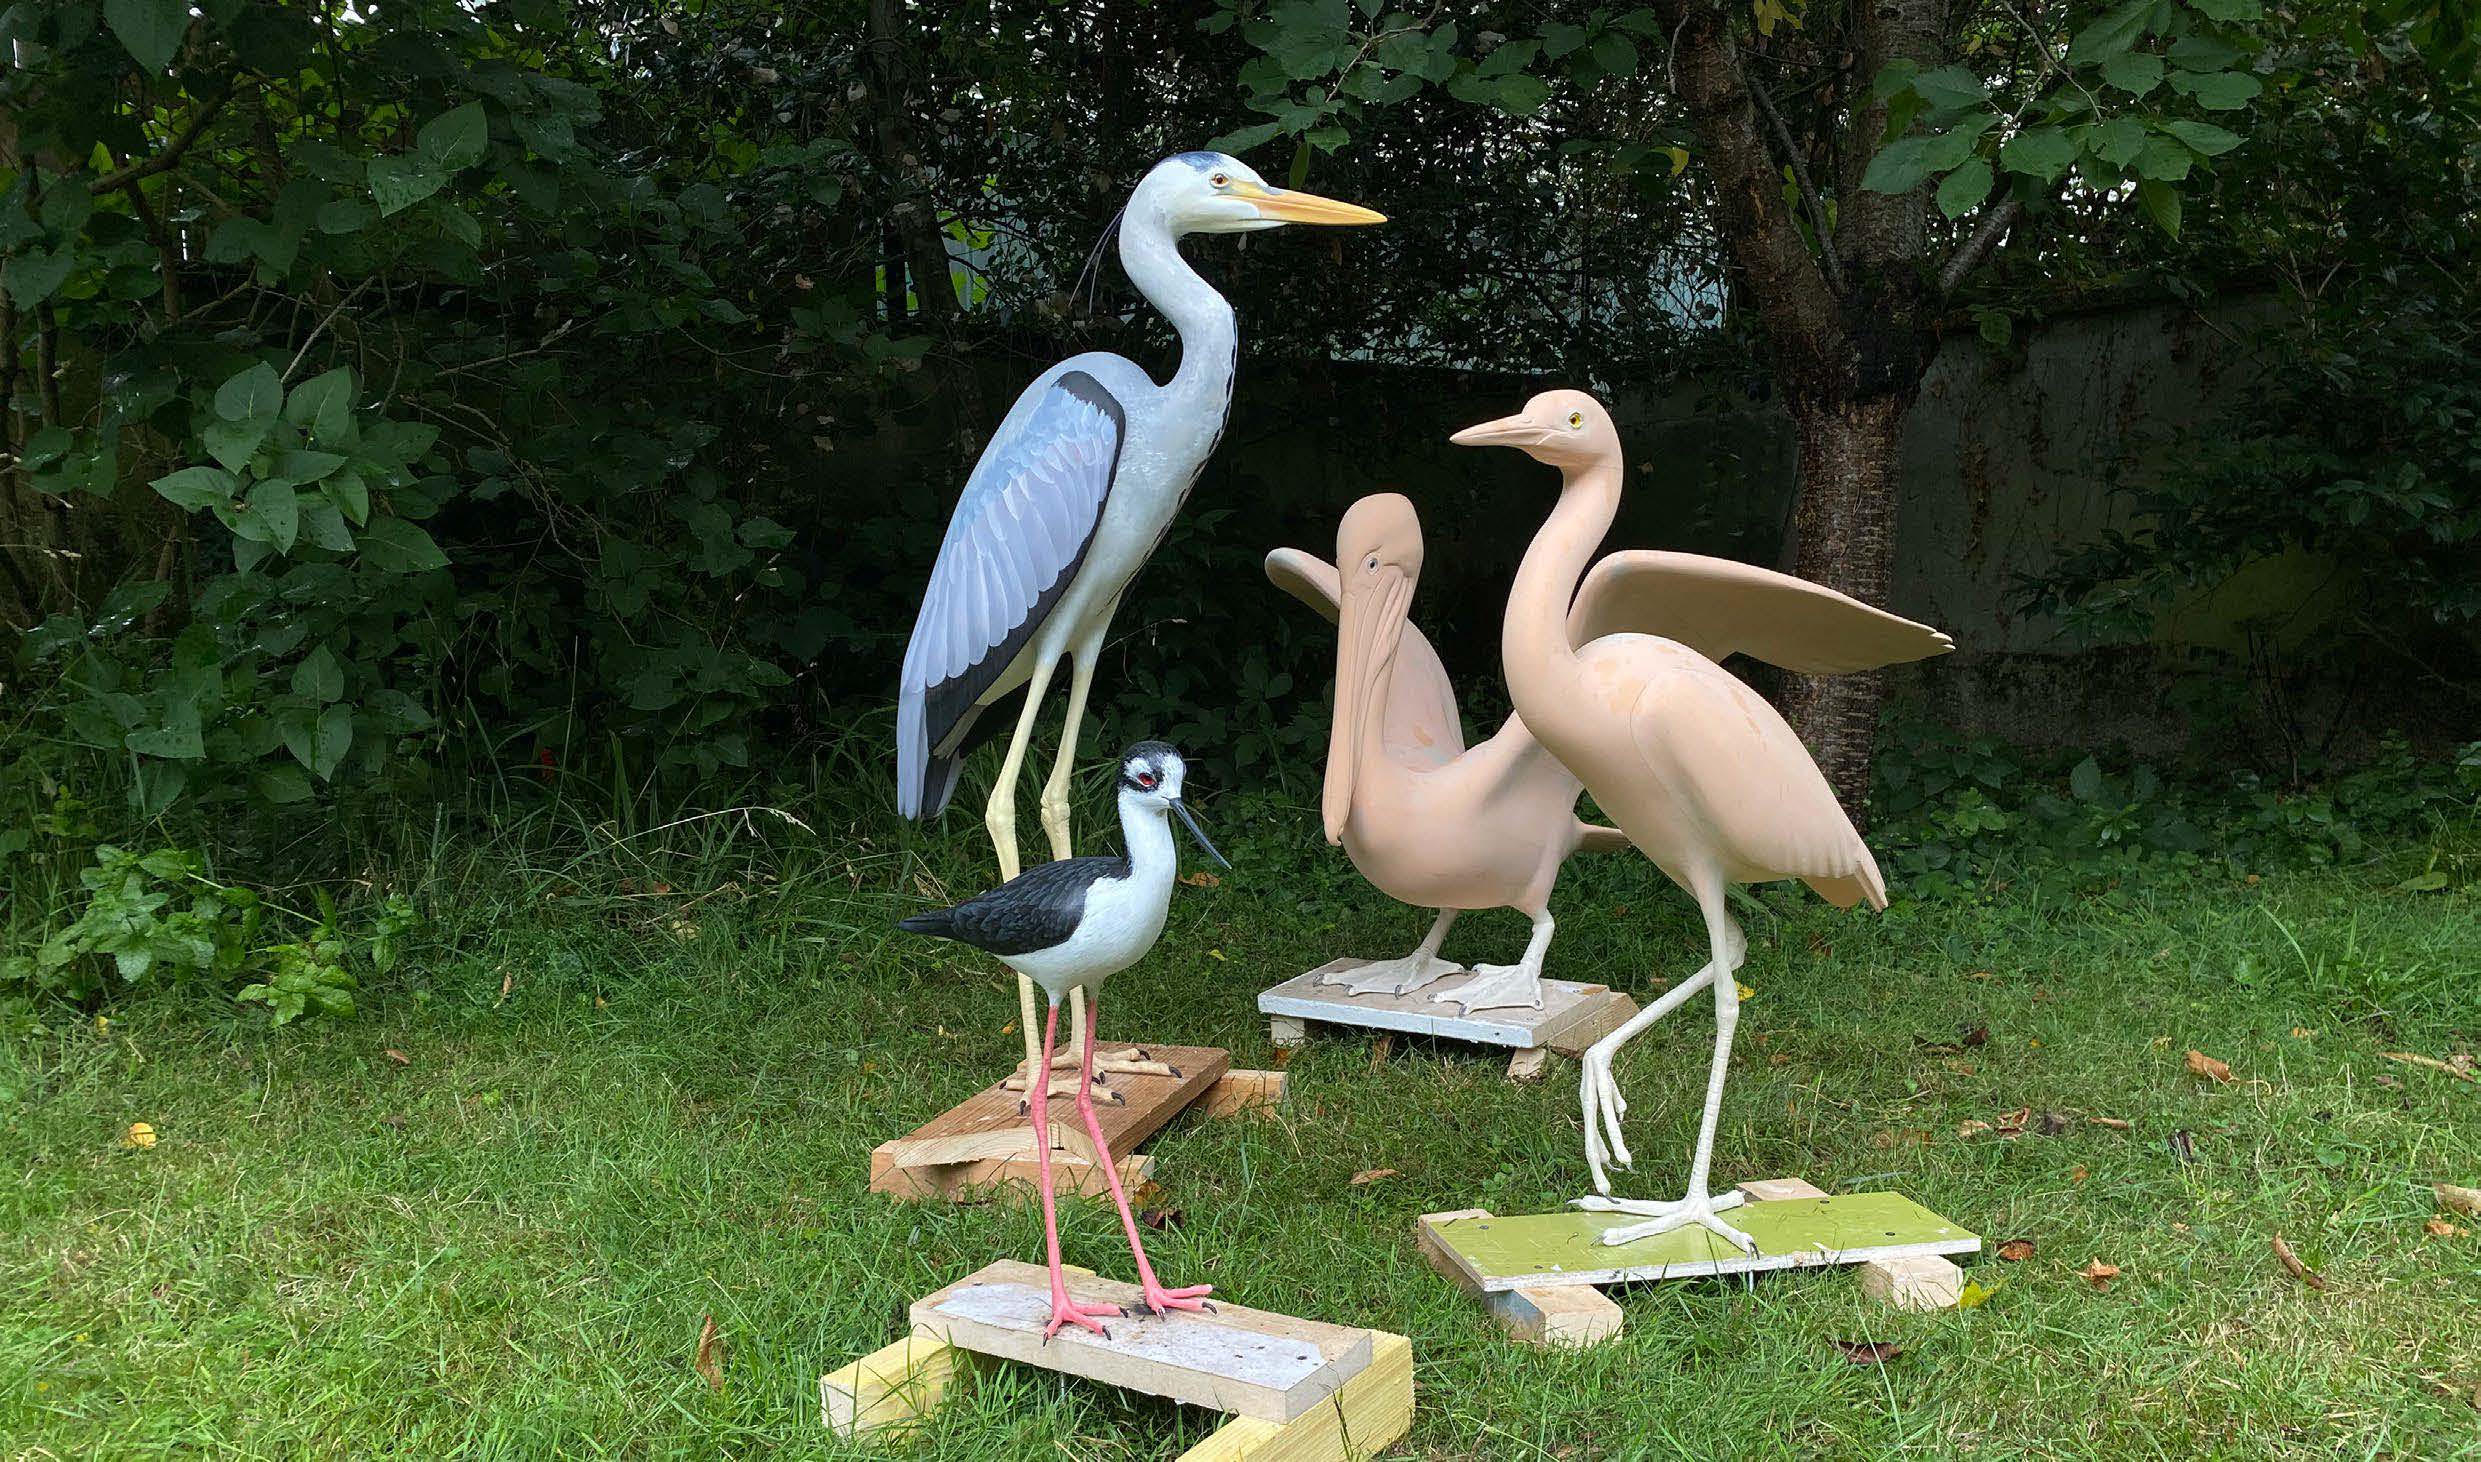 Les sculptures animales en cours de finalisation | The animal sculptures under construction